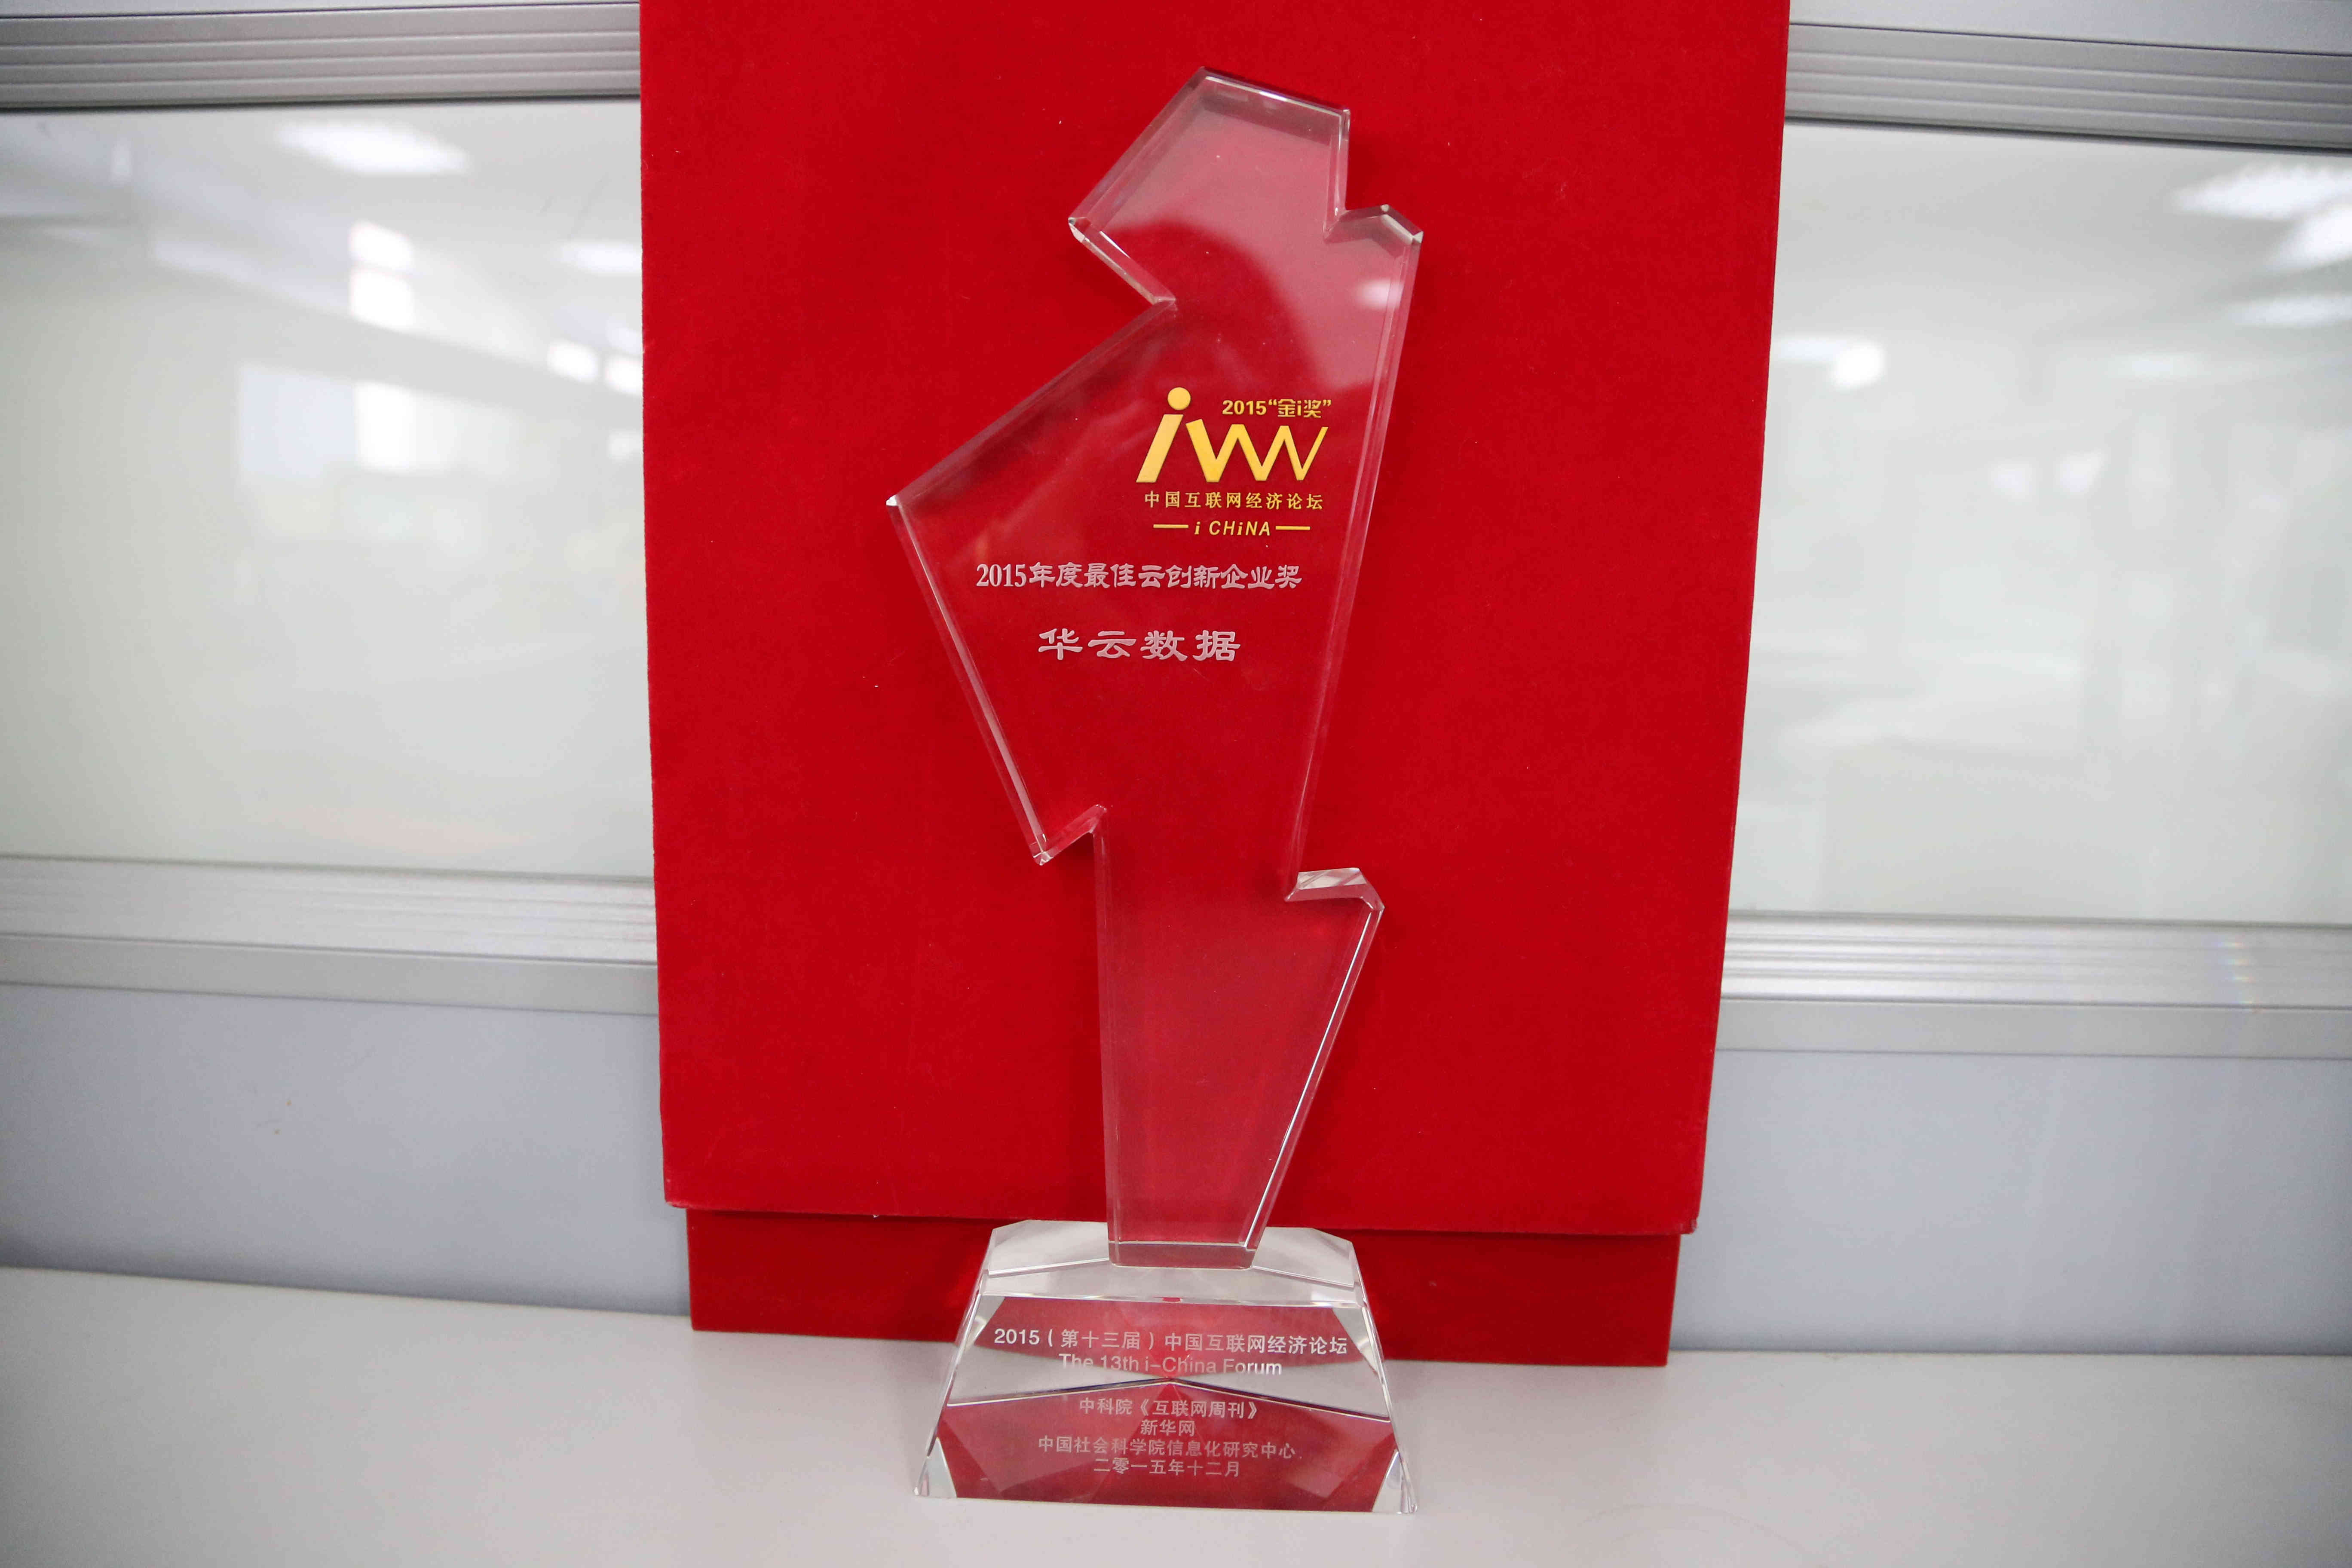 2015年度度最佳云创新企业奖